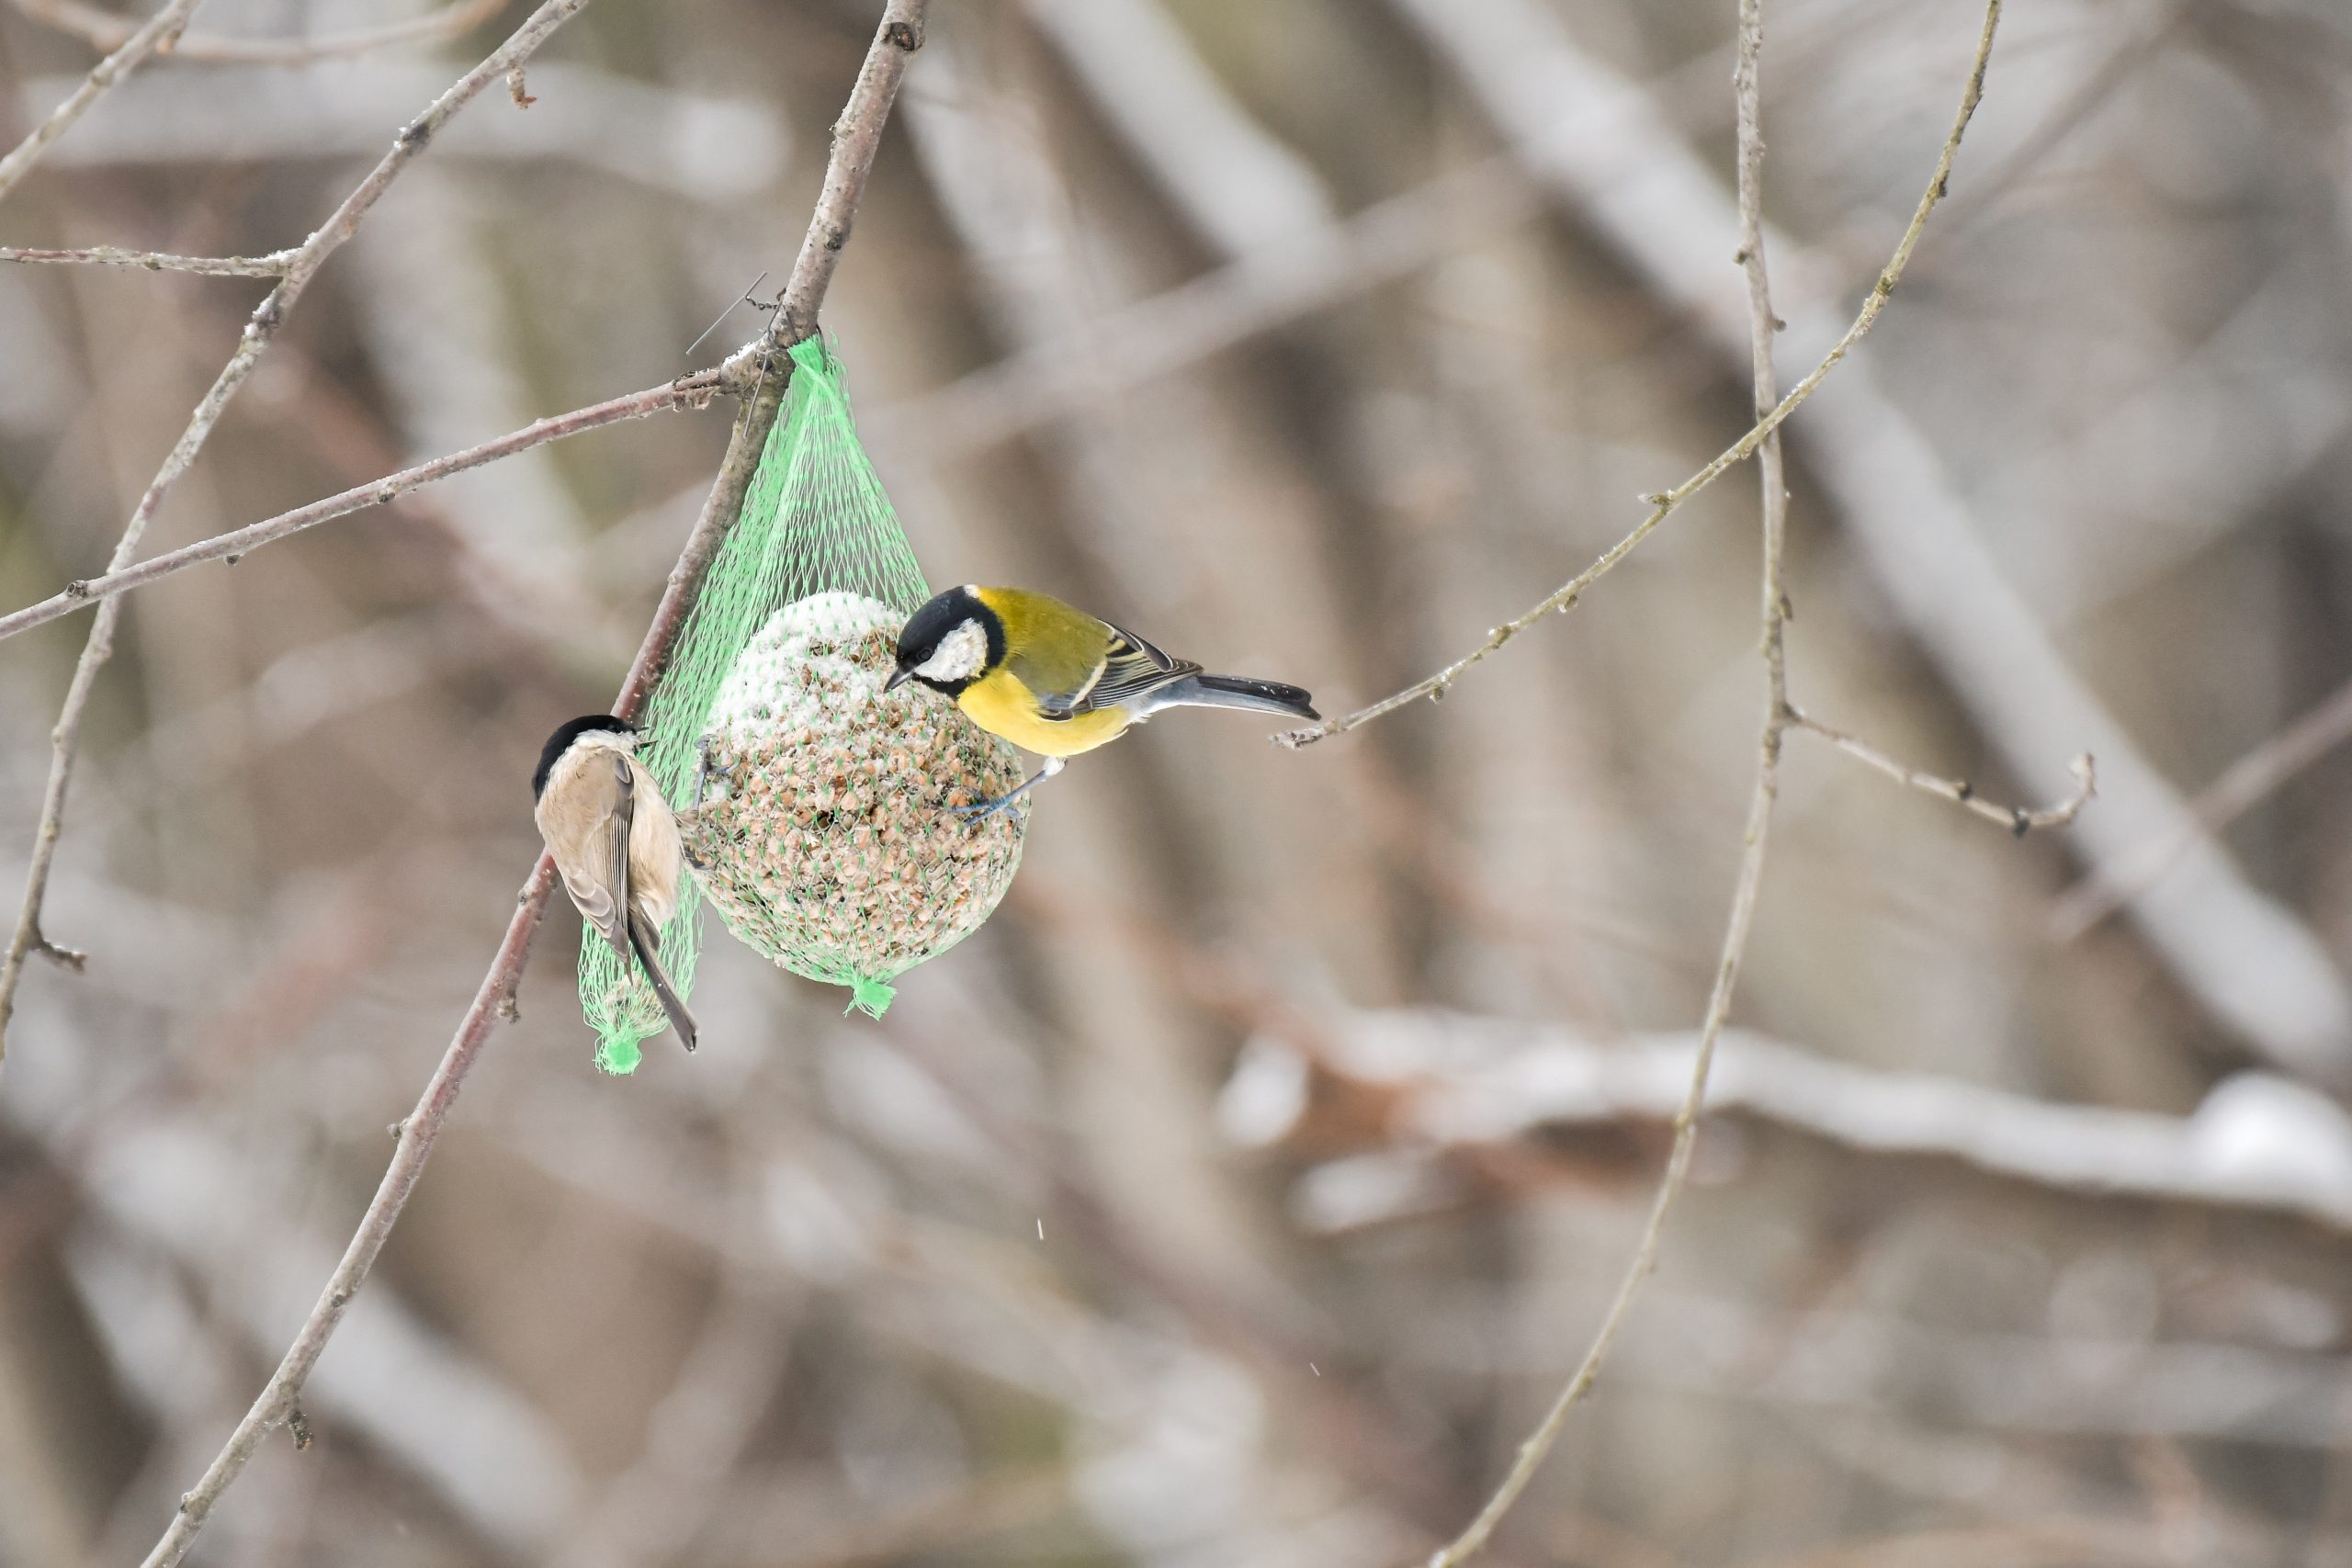 Nourrir les oiseaux en hiver : comment fabriquer des boules de graisse